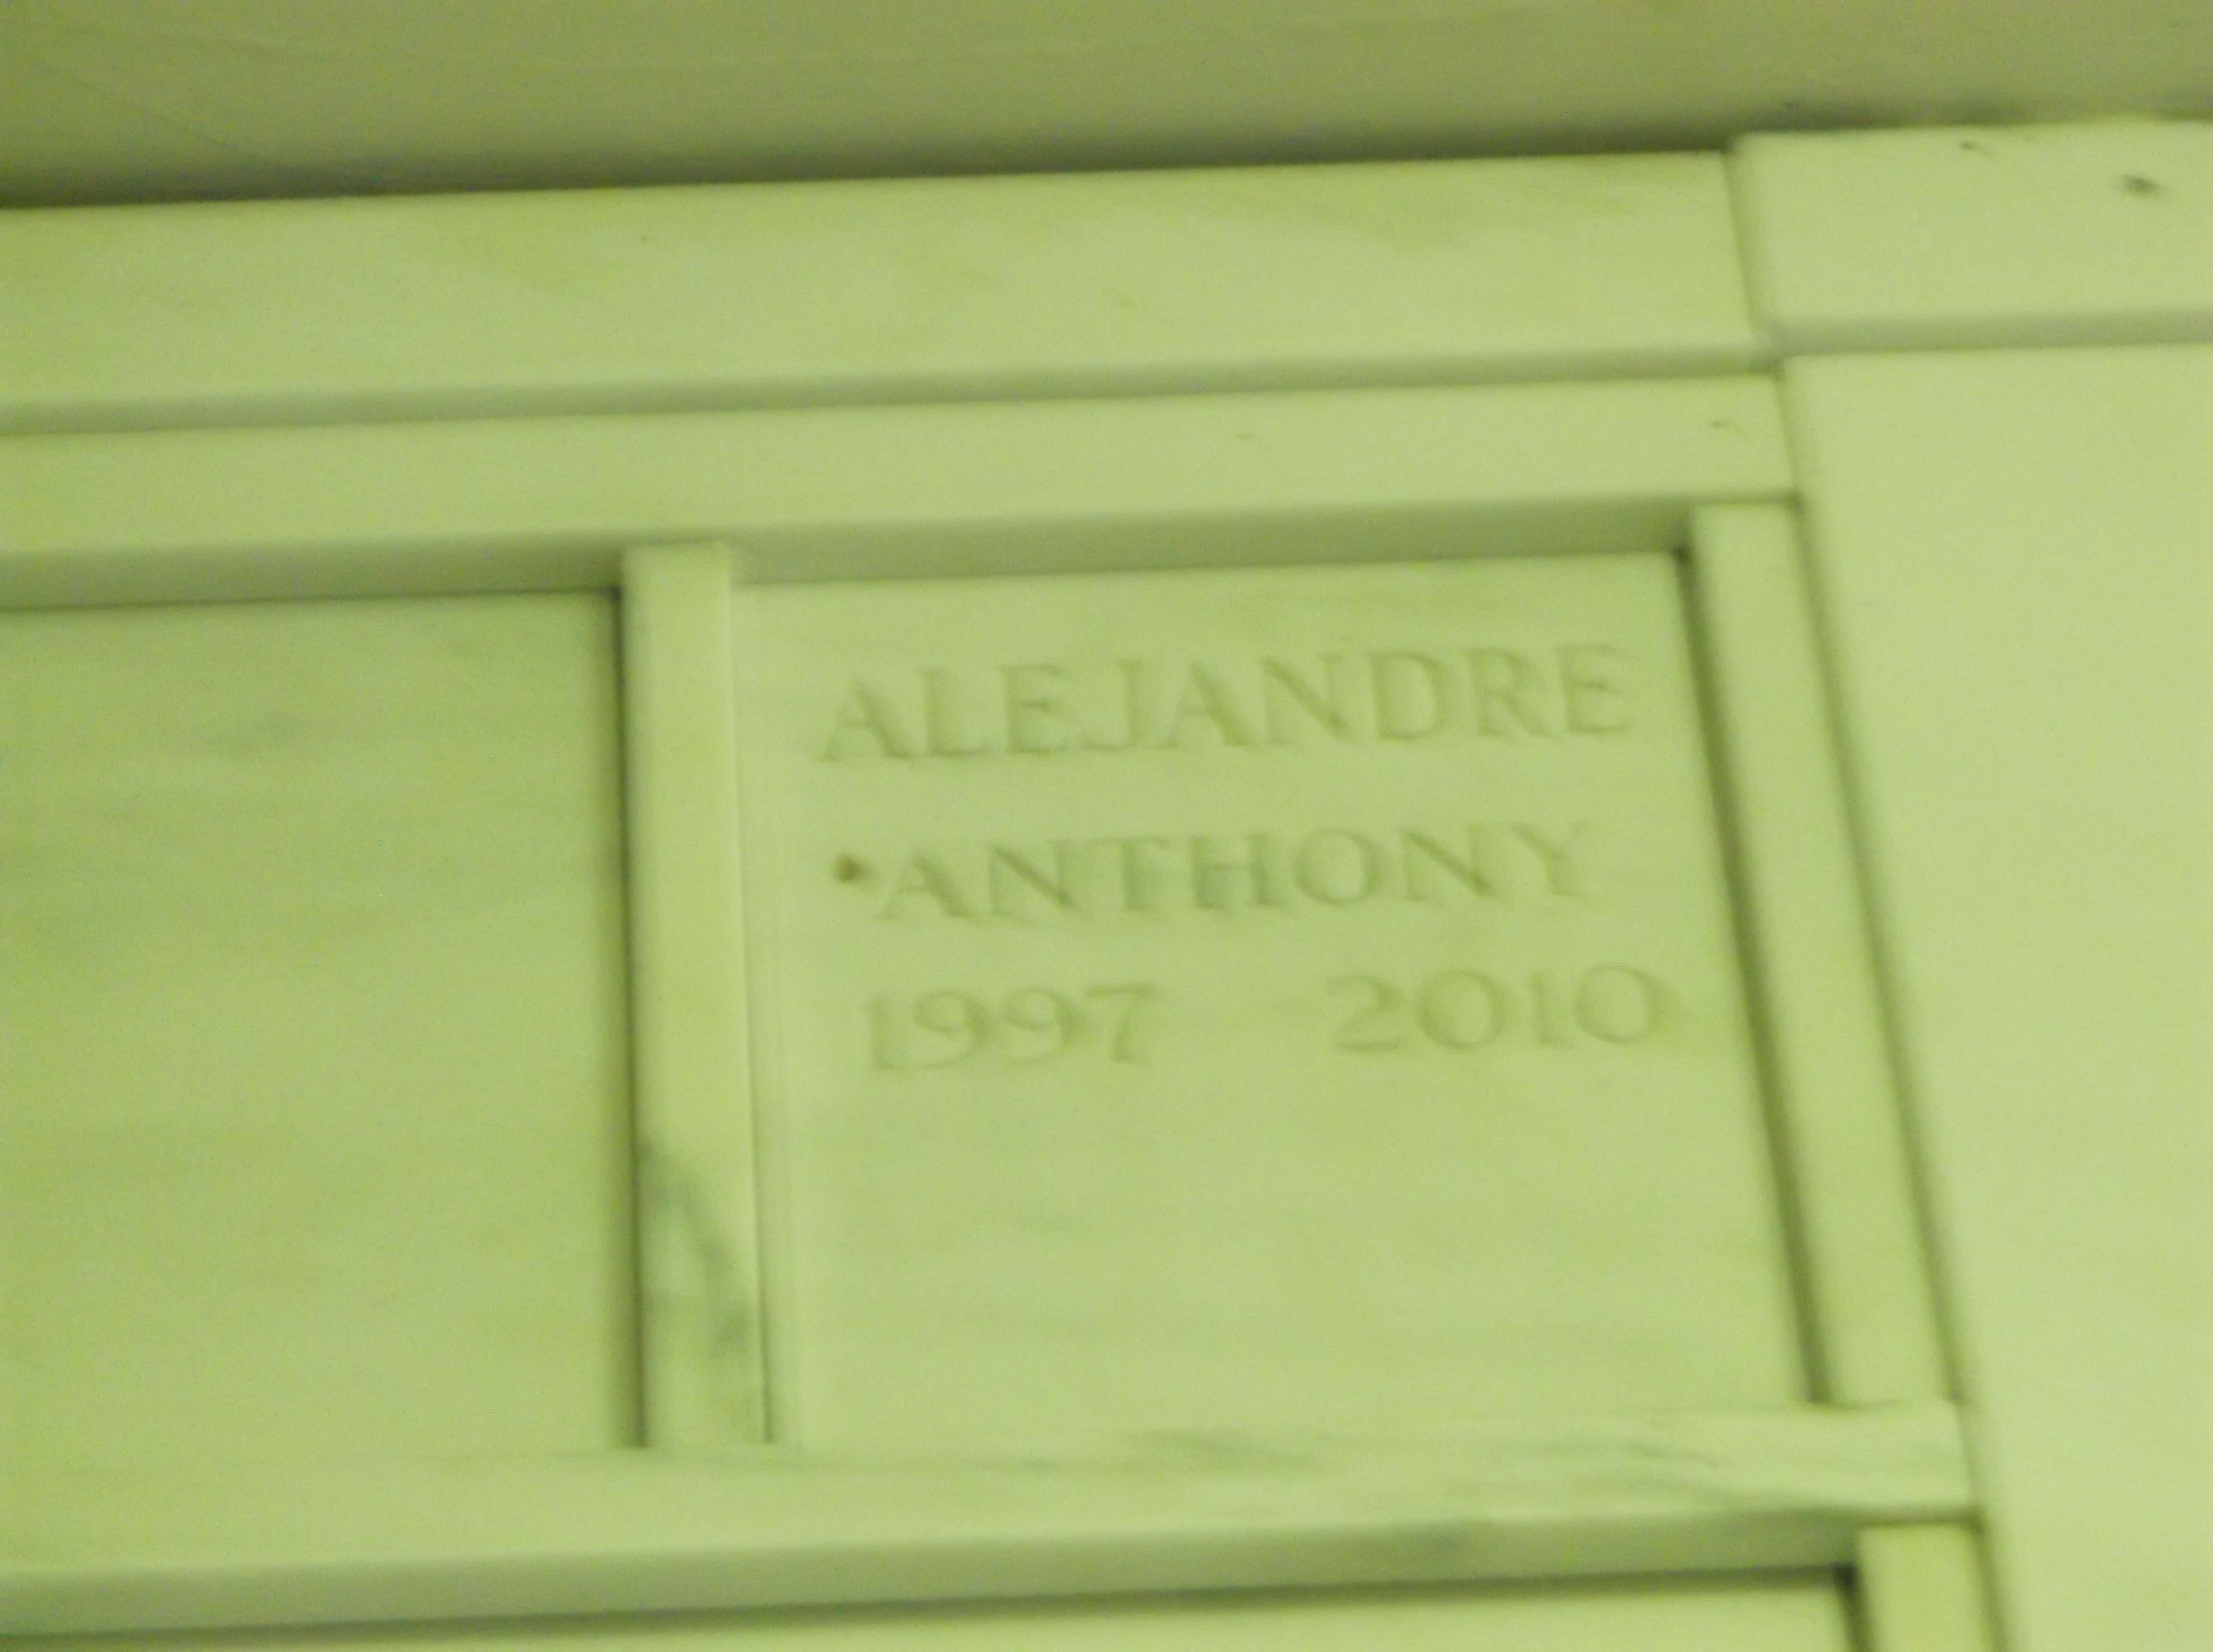 Anthony Alejandre